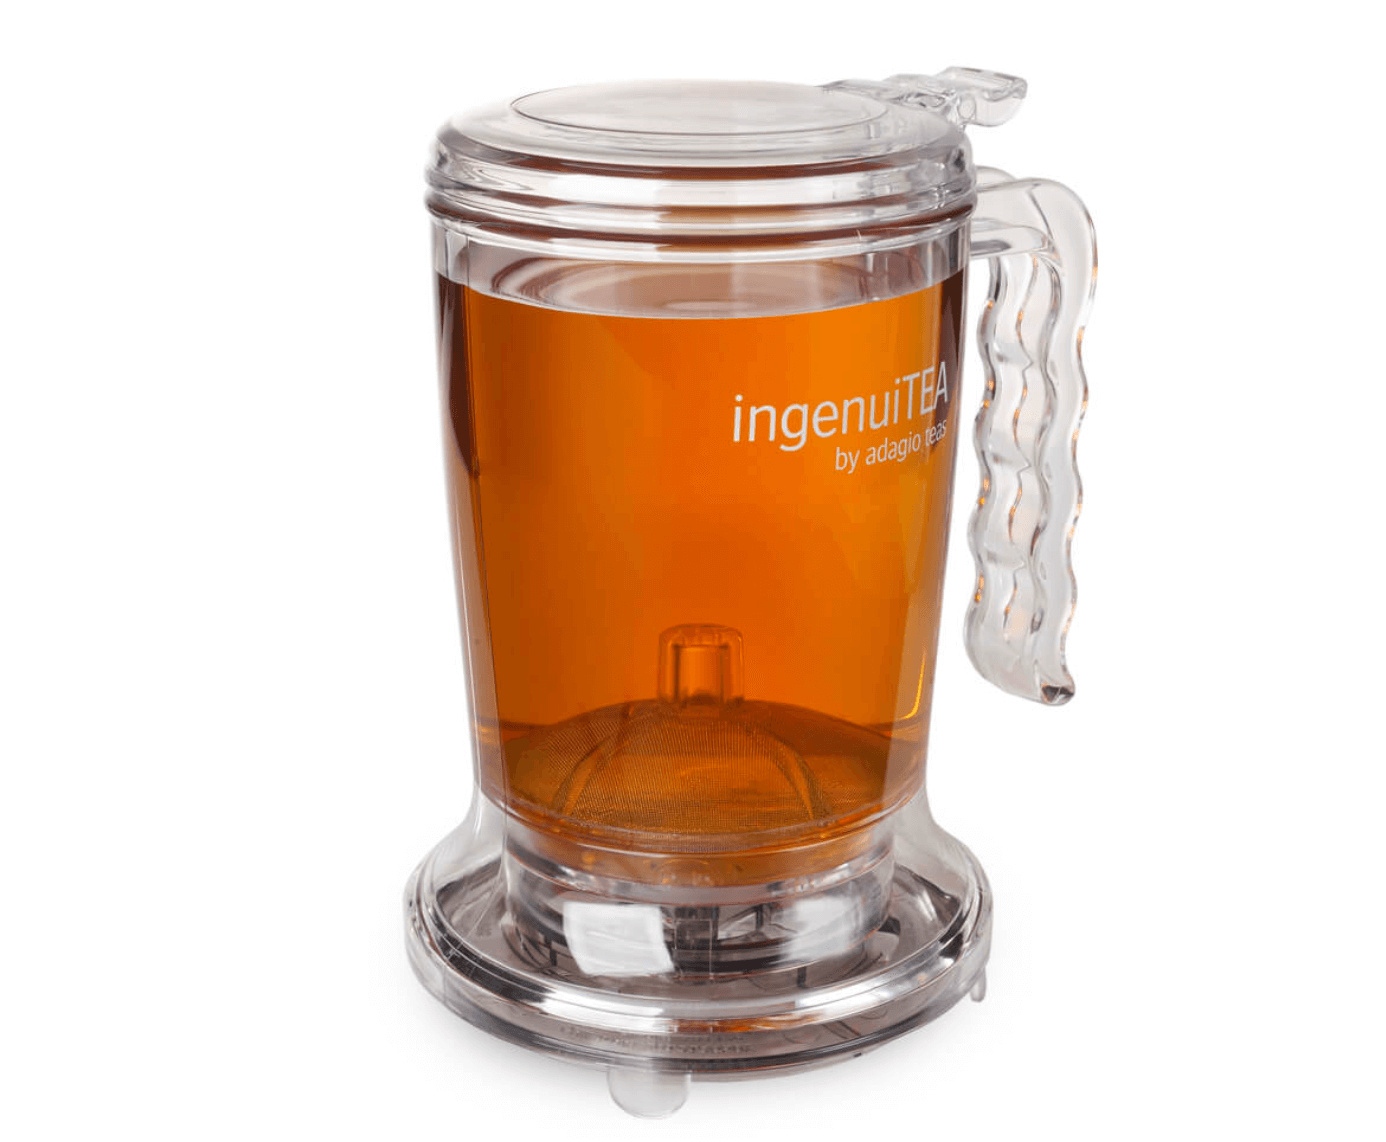 Adagio Teas Ingenuitea Teapot Review